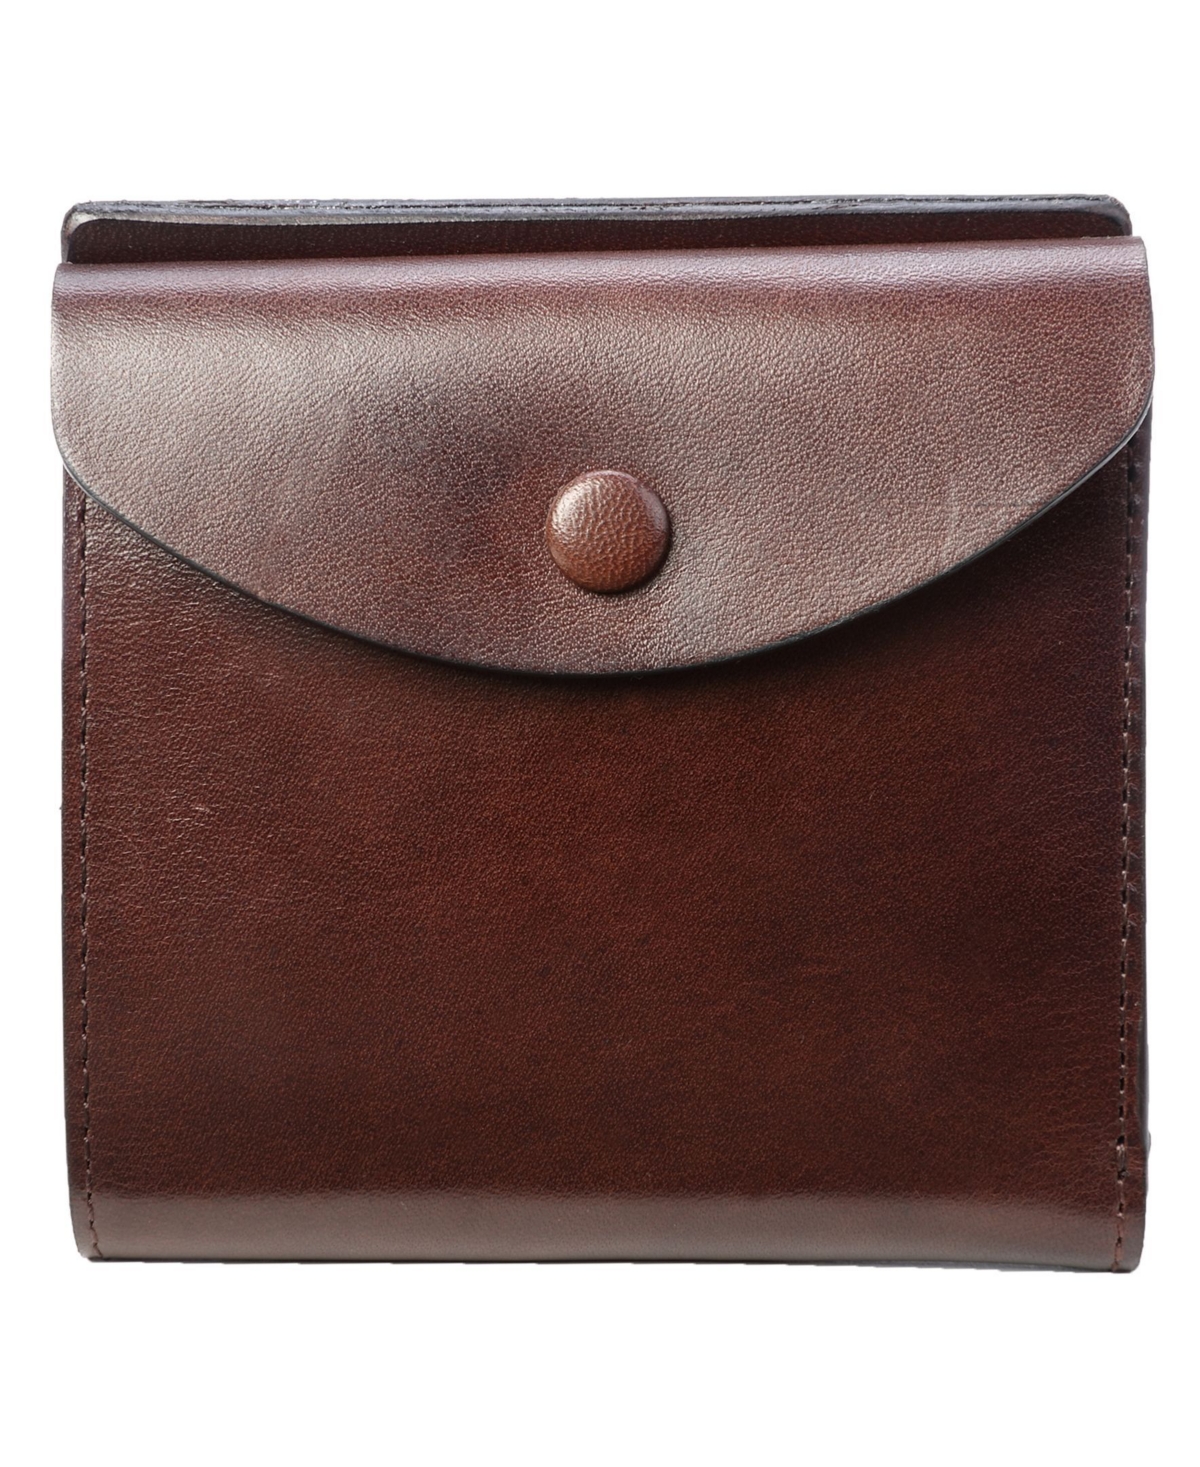 Women's Genuine Leather Snapper Wallet - Cognac